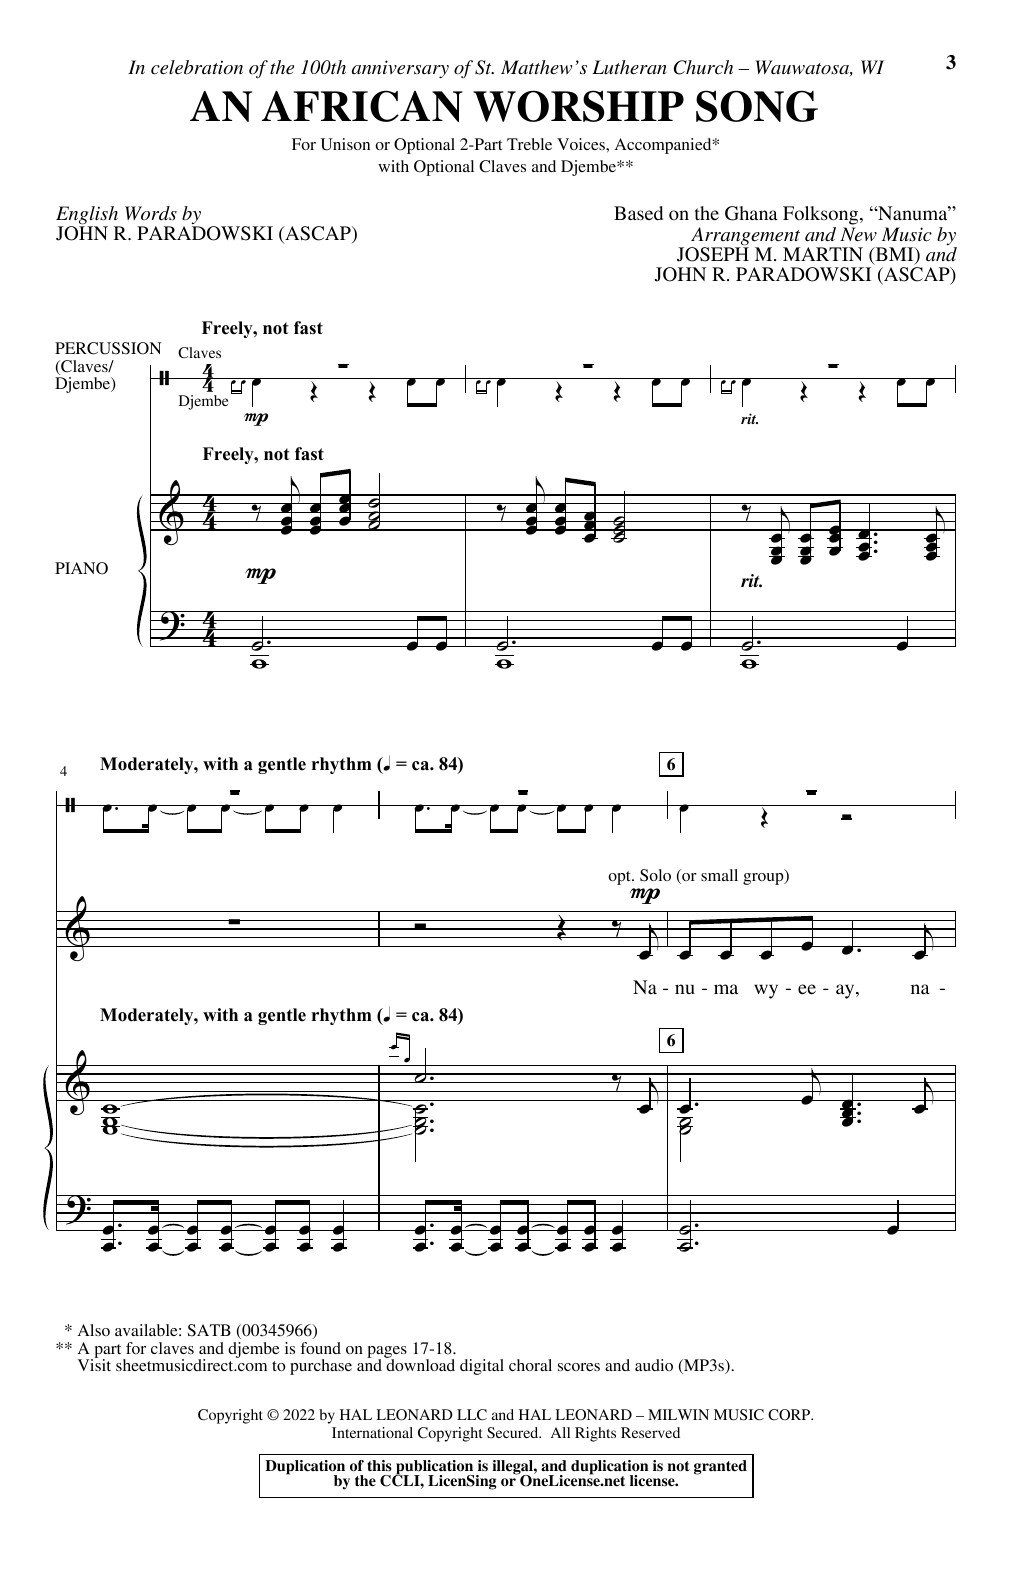 An African Worship Song (2-Part Choir) von Joseph M. Martin and John R. Paradowski